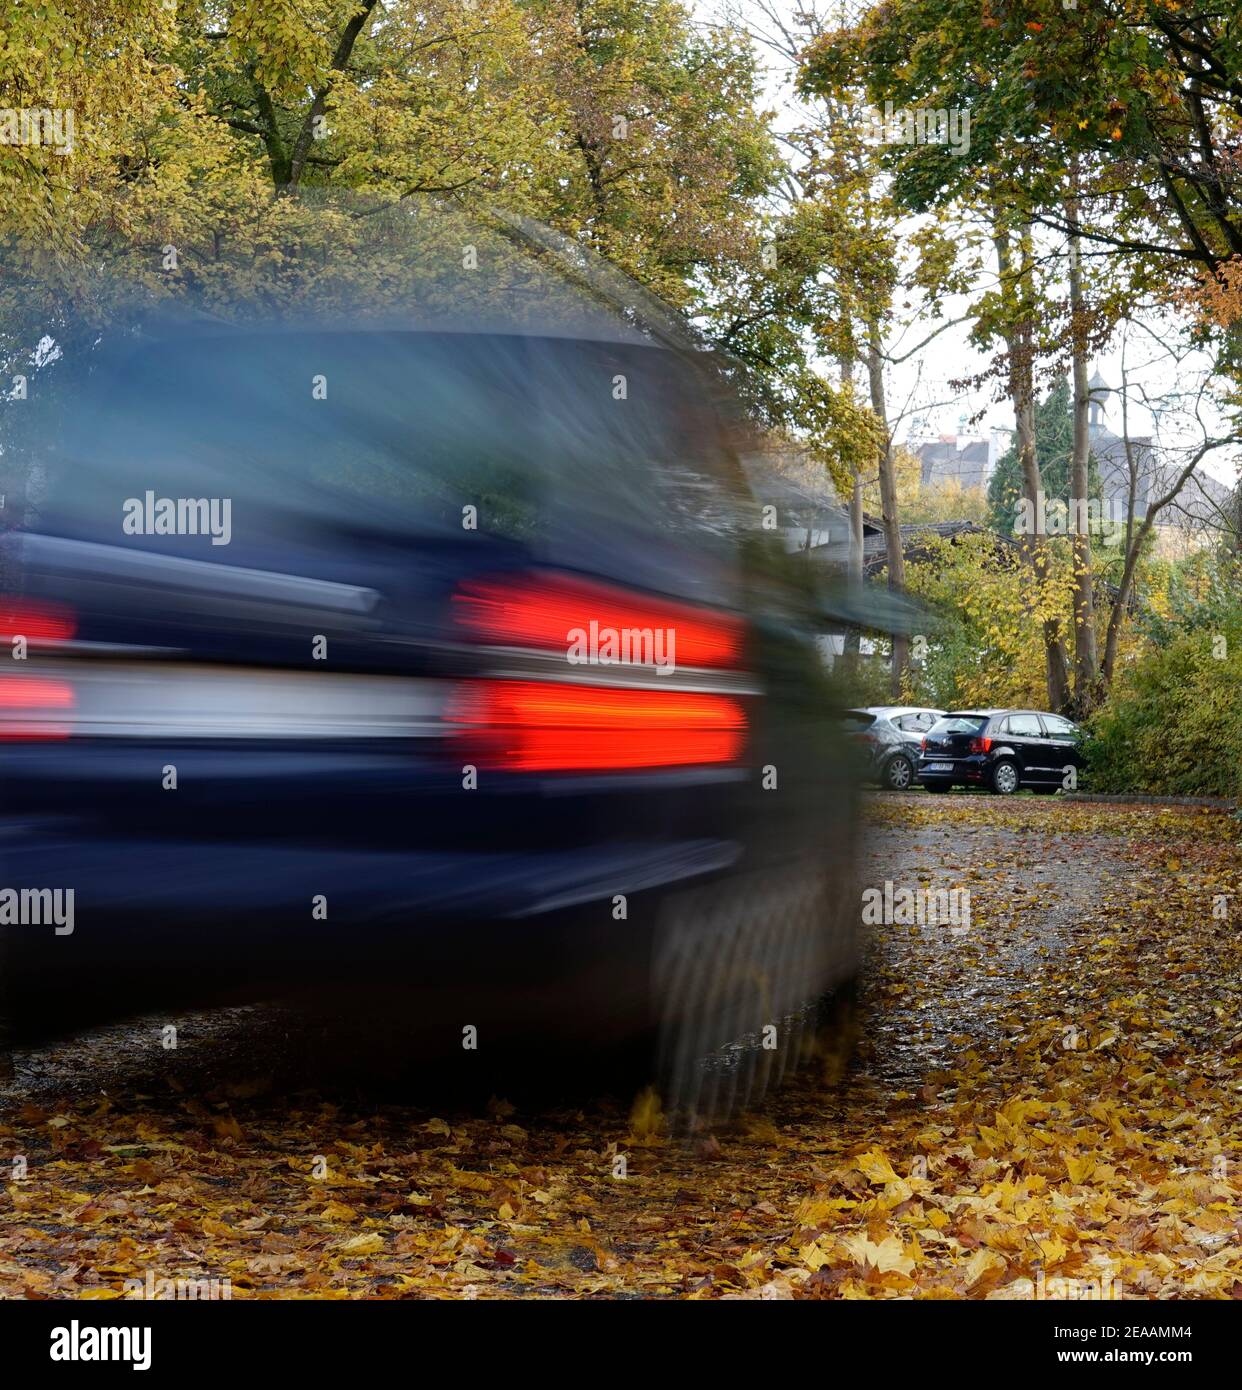 Germania, Baviera, foglie autunnali sulla strada, strada di campagna, alberi decidui, auto in movimento, rischio di scivolamento Foto Stock